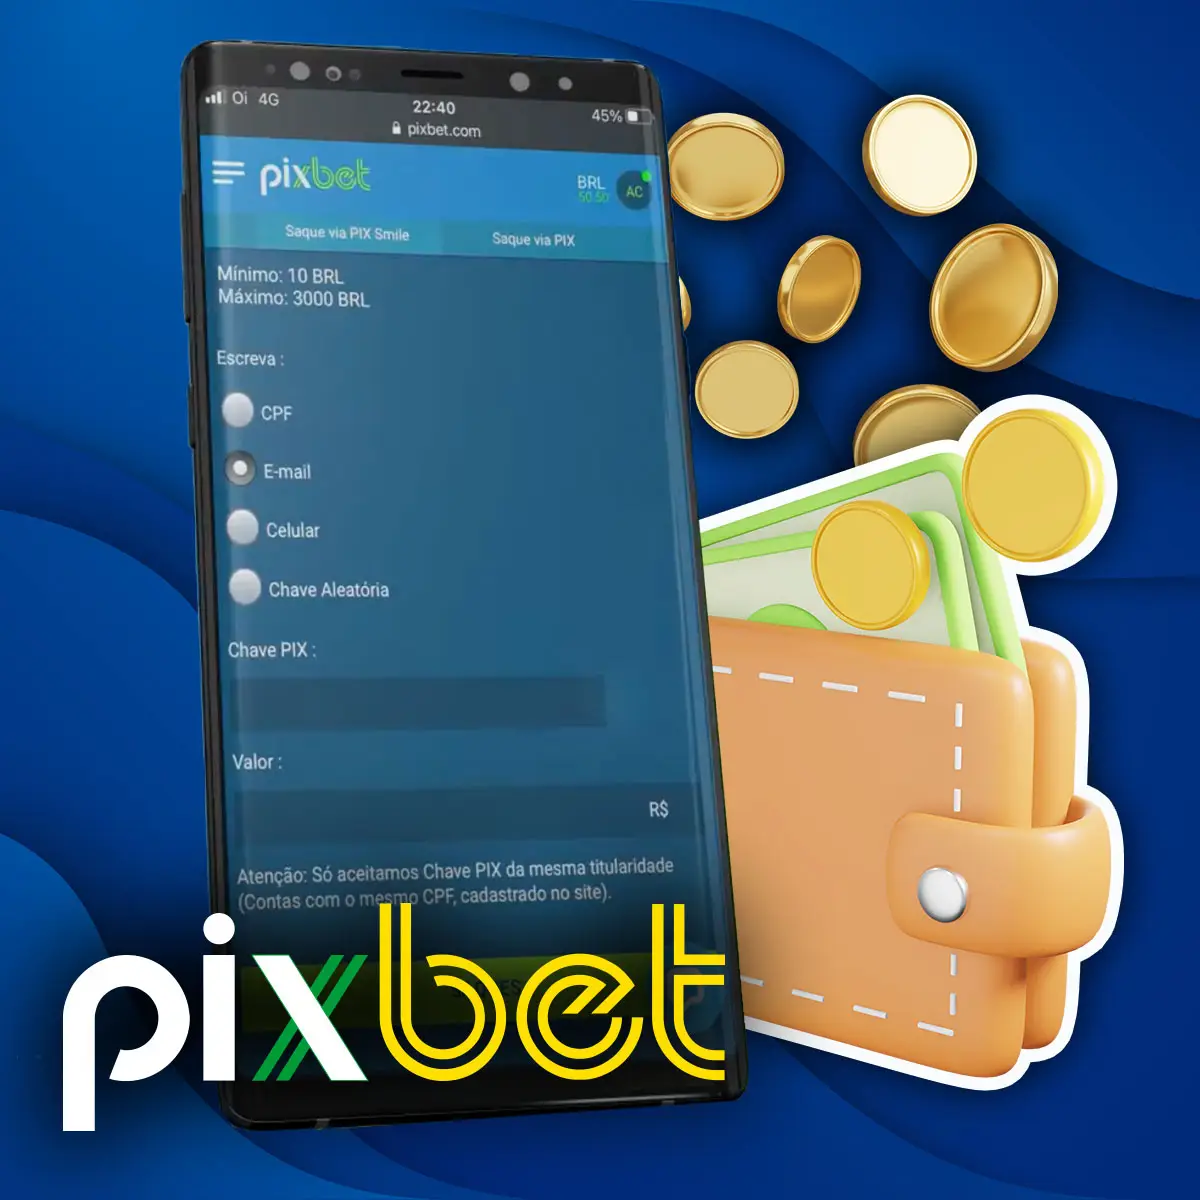 Como retirar dinheiro no aplicativo móvel Pixbet no Brasil